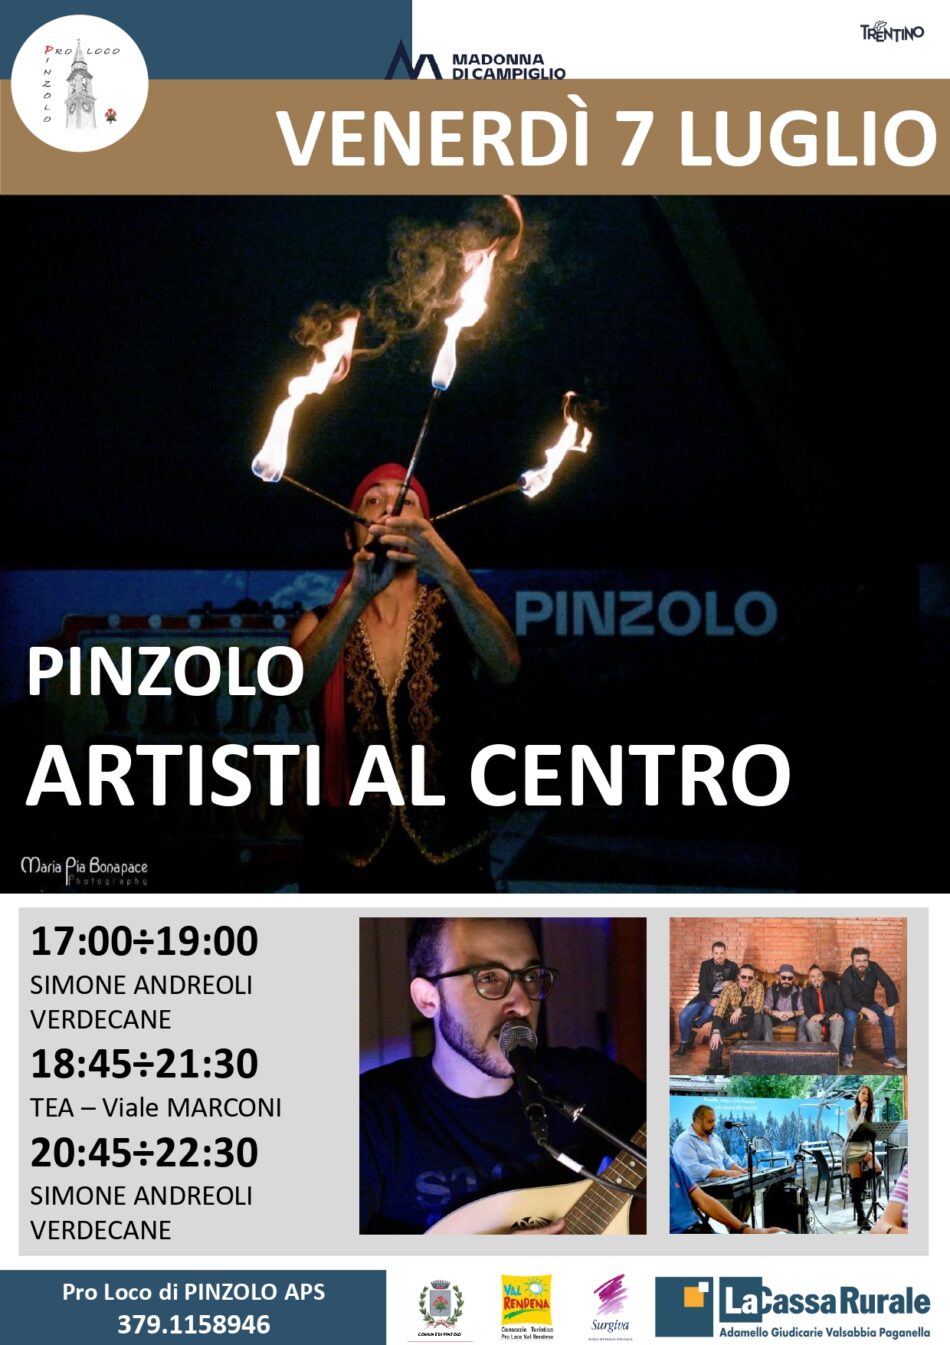 L’Estate è Pinzolo: Venerdì 7 luglio ARTISTI AL CENTRO